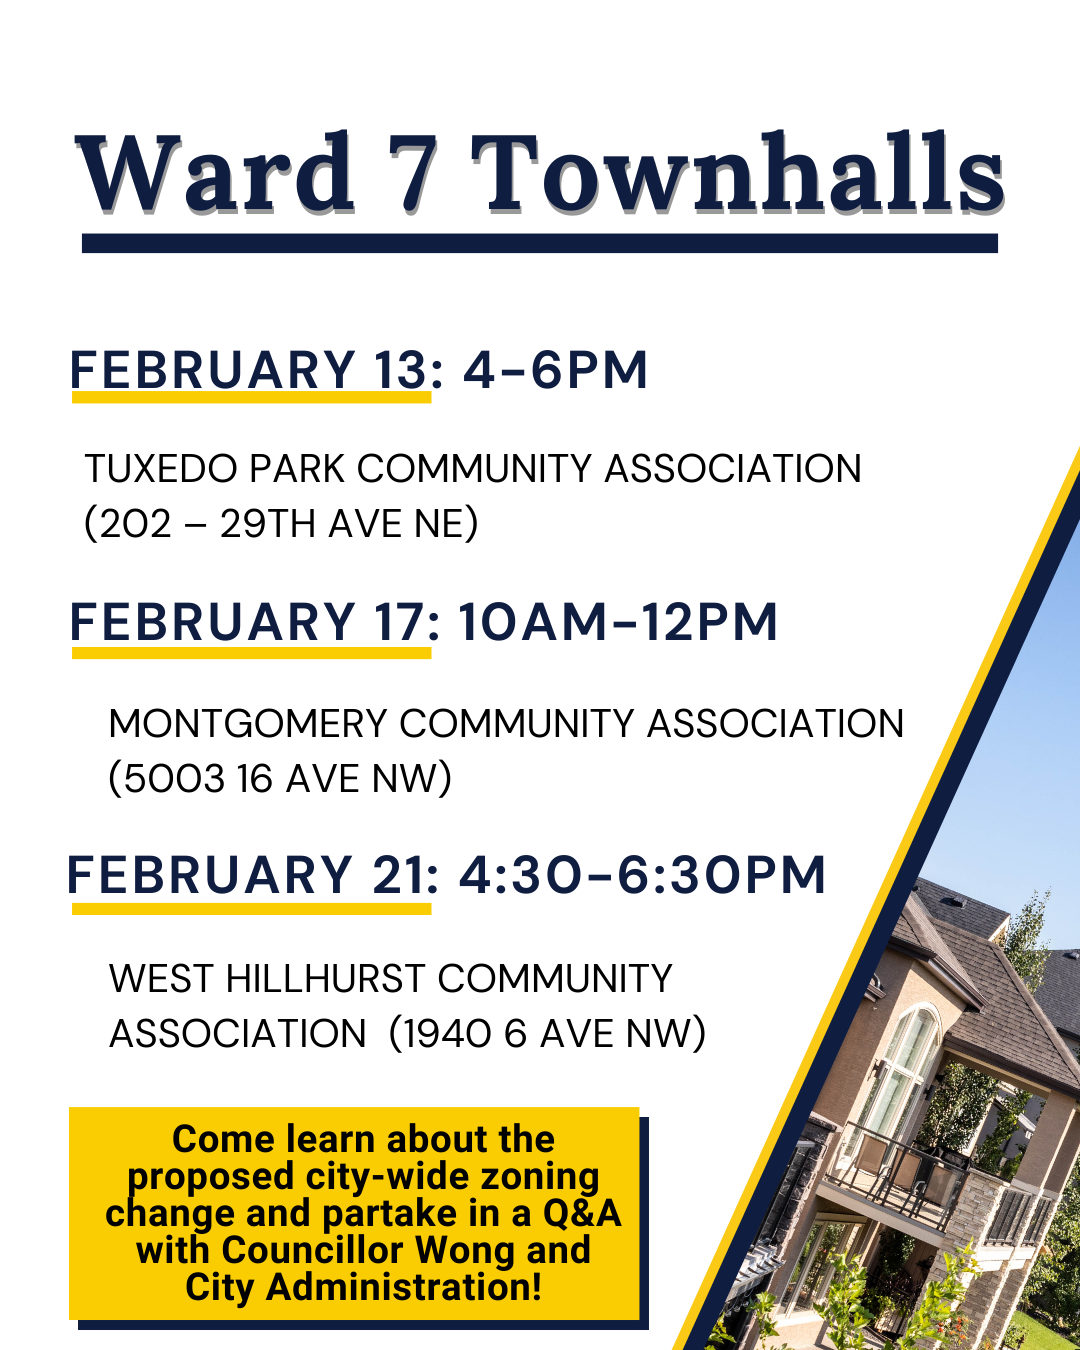 Ward 7 Townhalls: